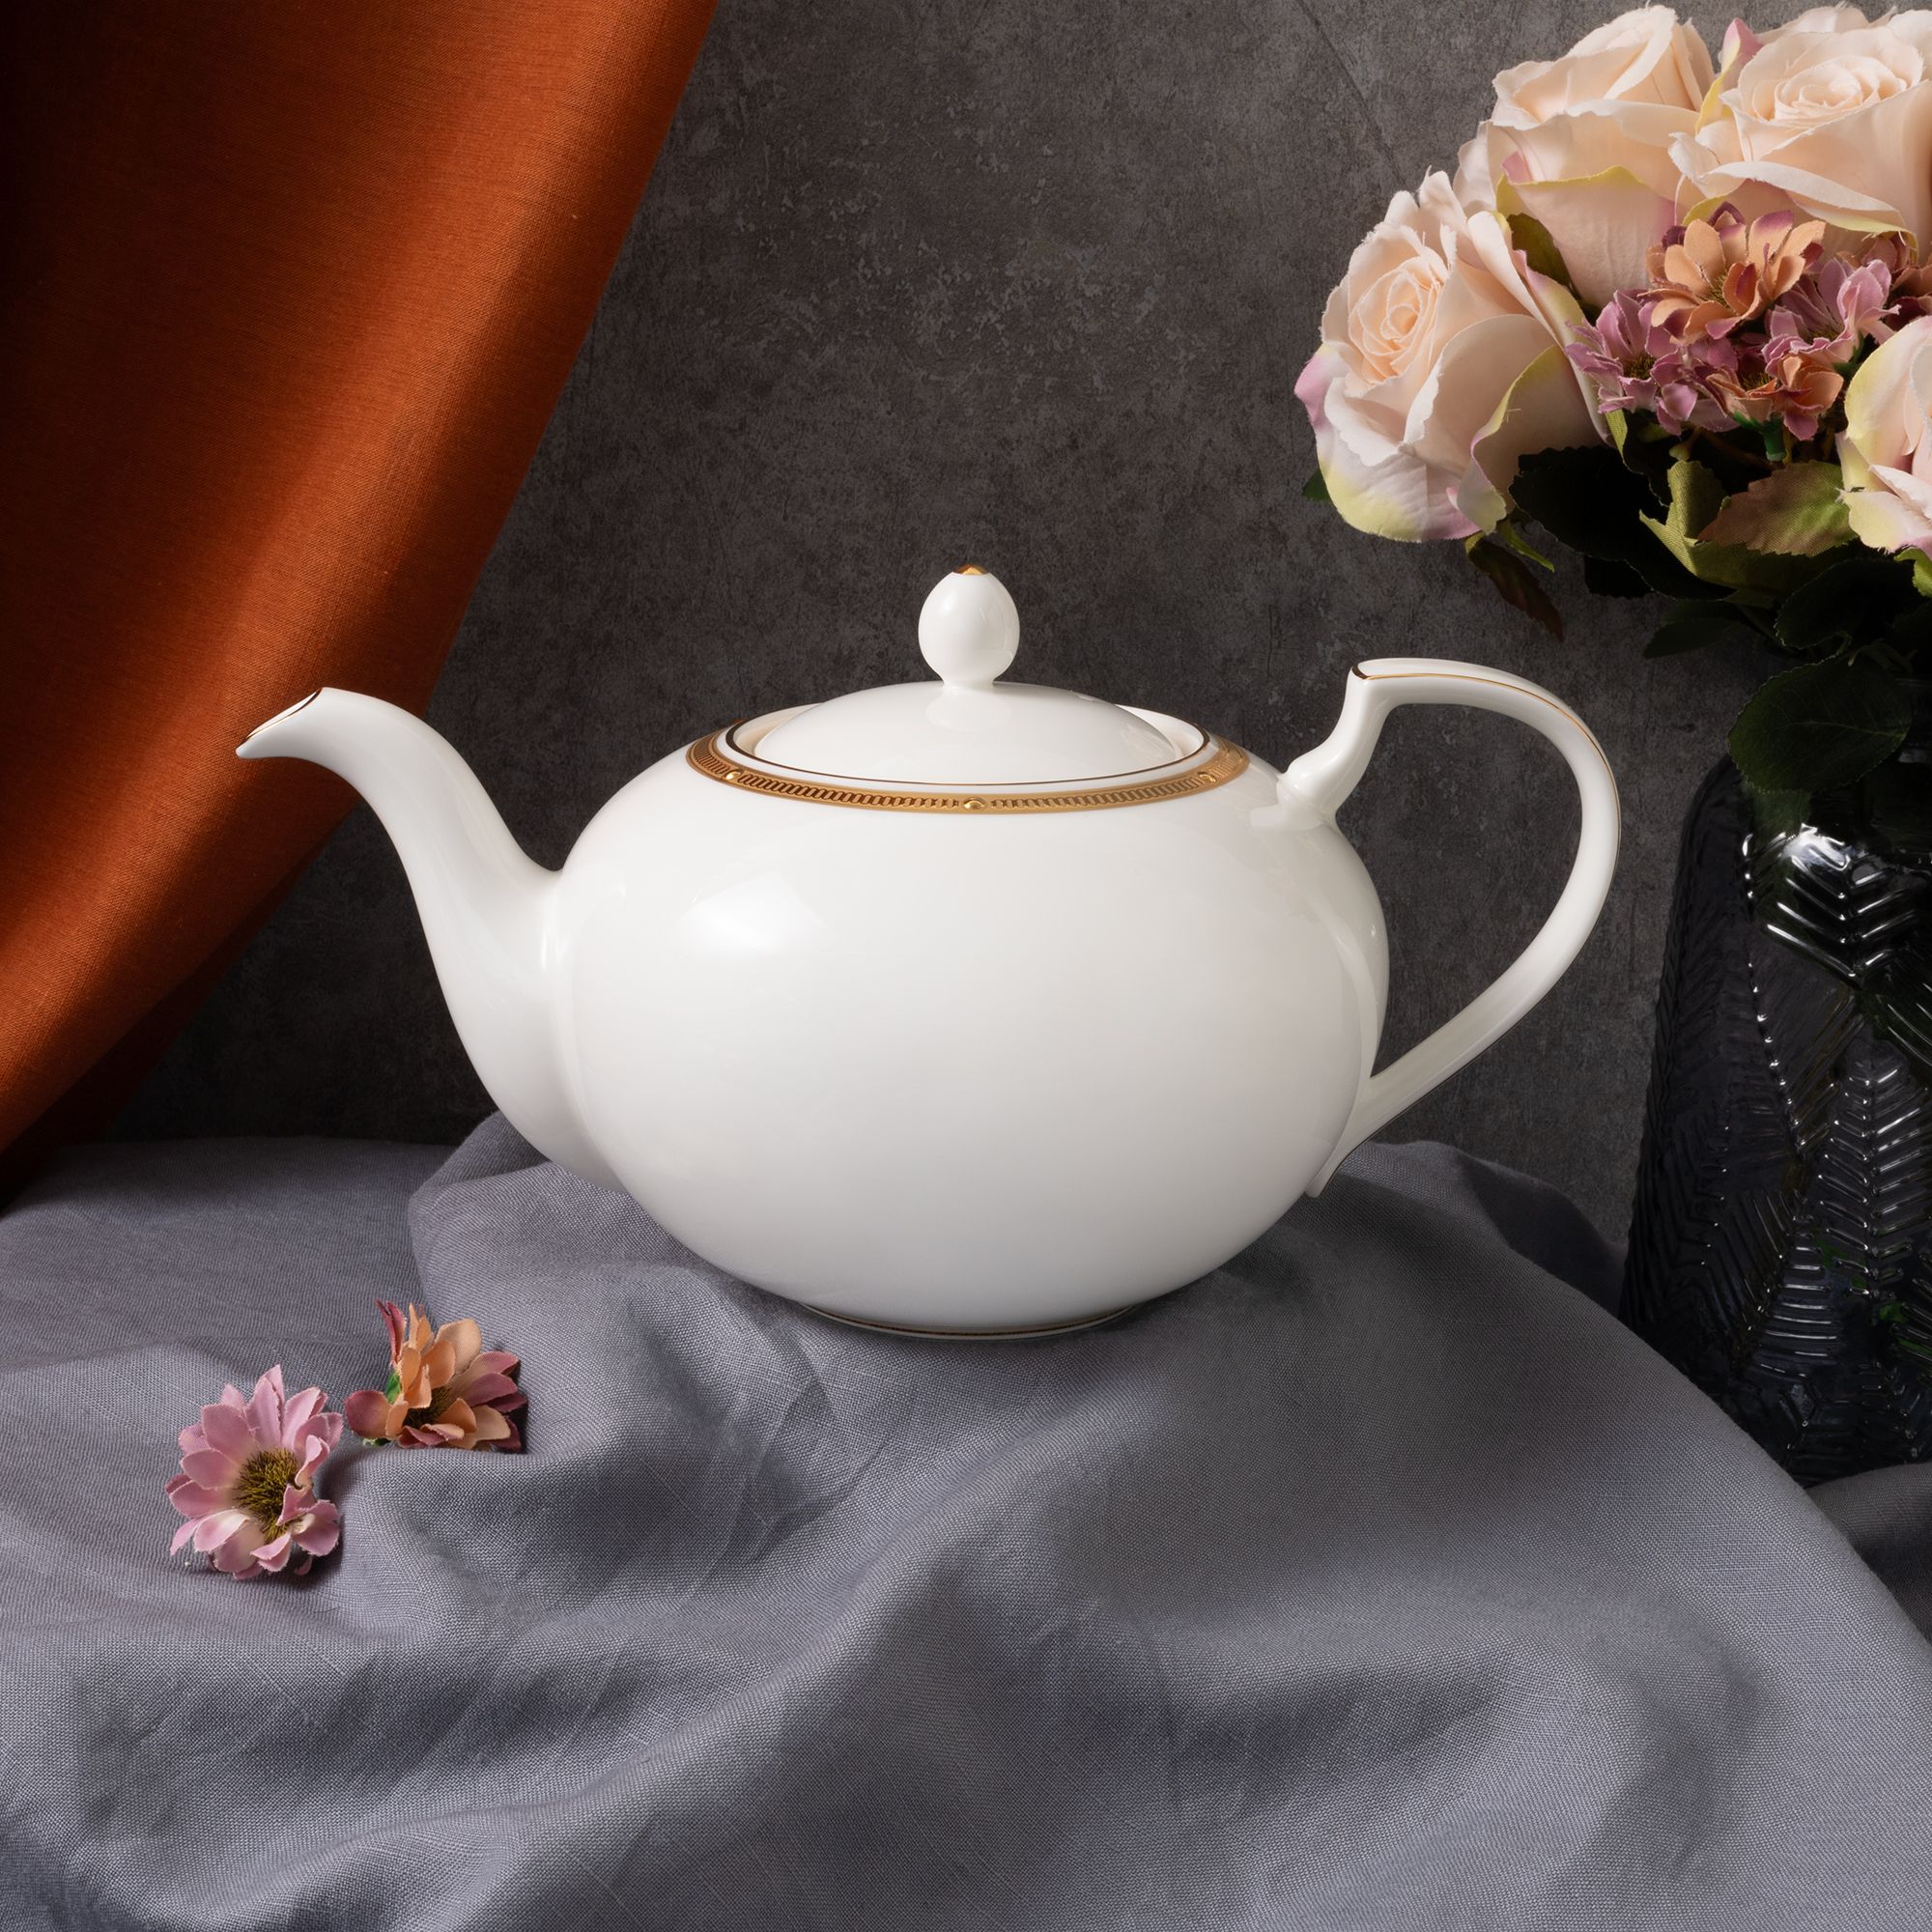  Bộ ấm chén uống trà 15 món sứ xương cao cấp viền vàng | Rochelle Gold 4796L-T017A 